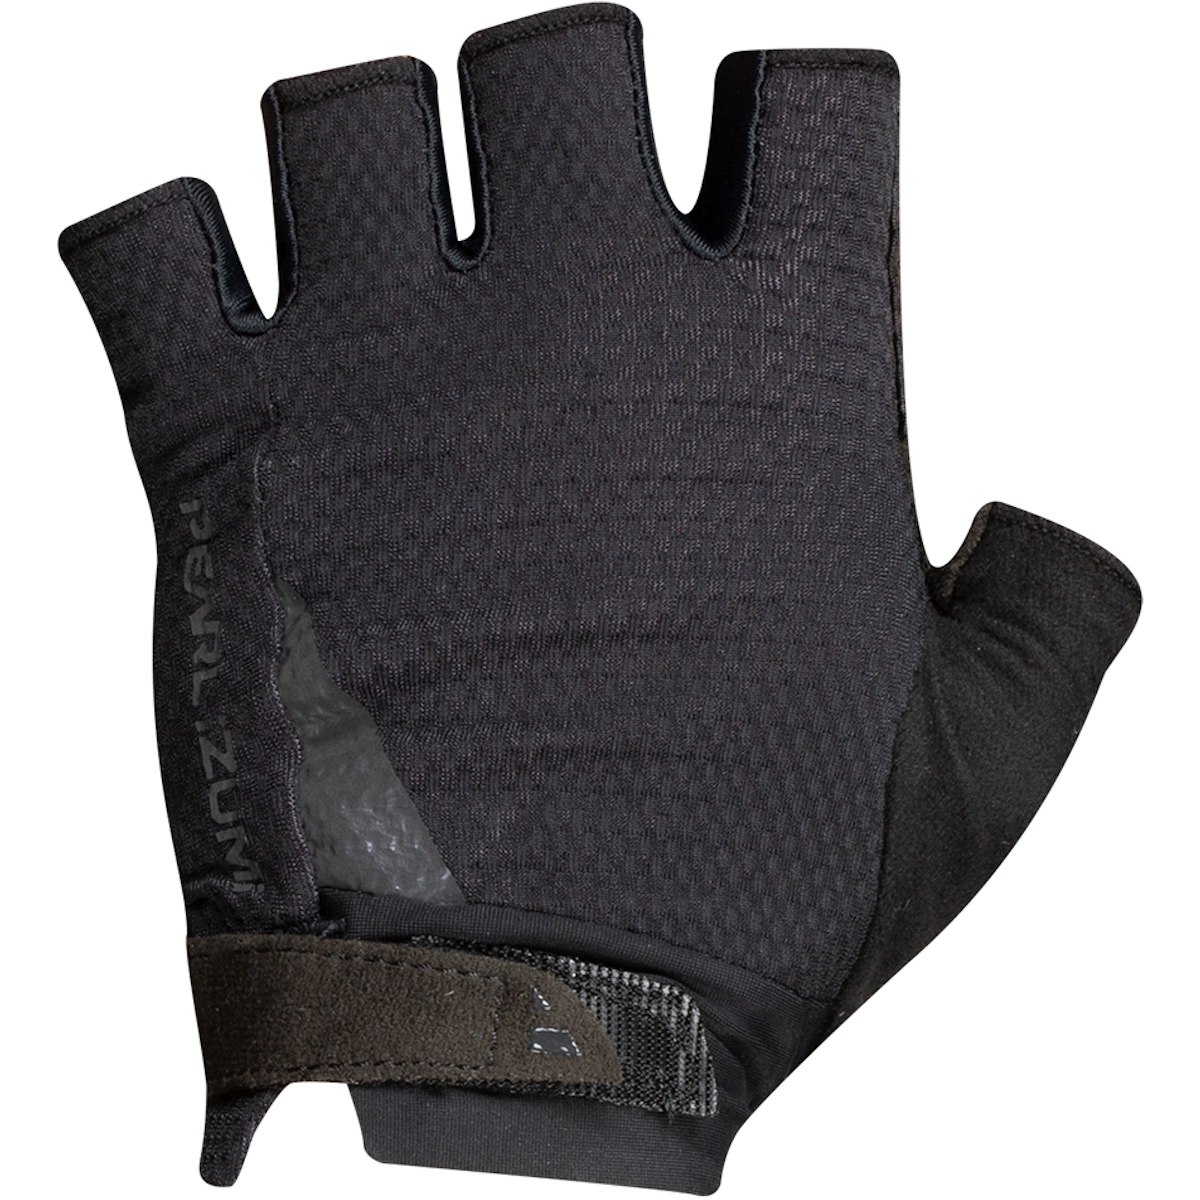 Produktbild von PEARL iZUMi Elite Gel Kurzfinger-Handschuhe Damen 14242002 - schwarz - 021